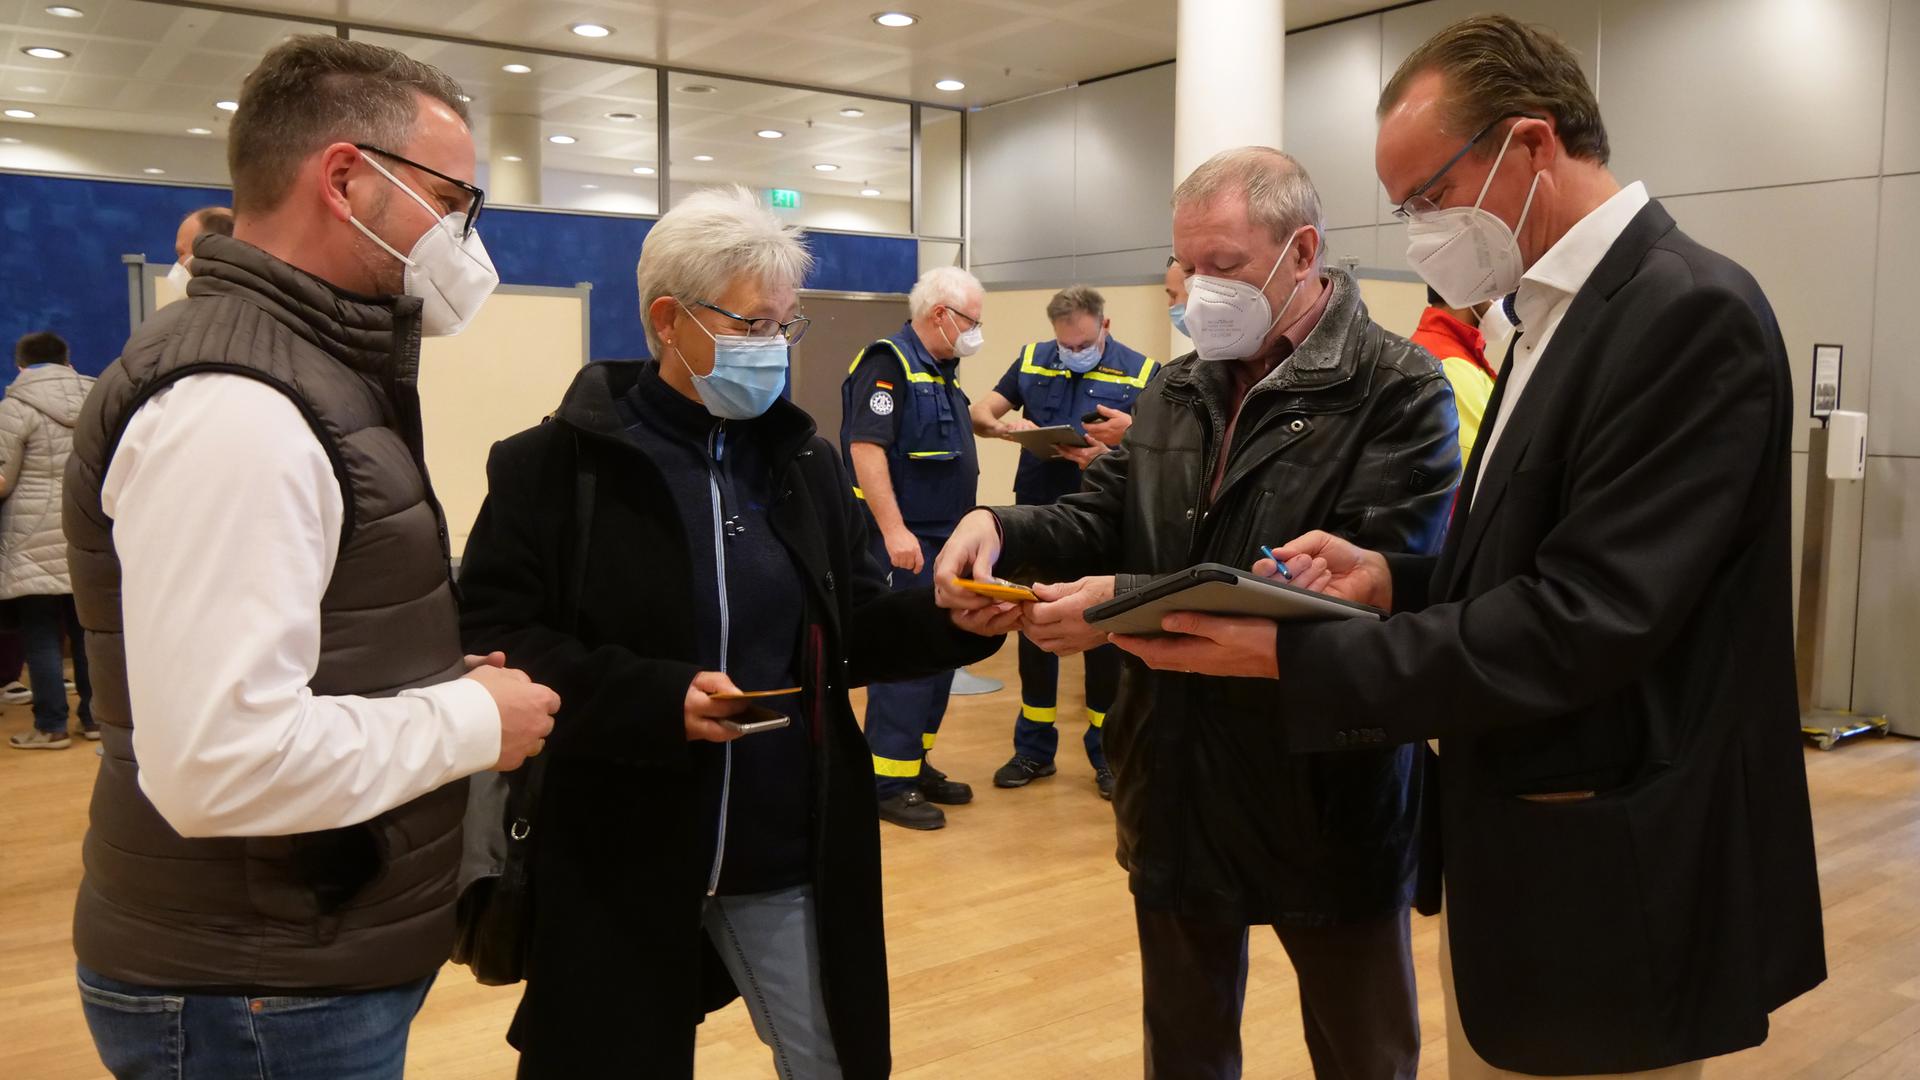 Andrea und Frank Wunderlich wurden von OB Peter Boch (links) und dem CDU-Bundestagsabgeordneten Gunther Krichbaum (rechts) empfangen. Beide fungierten als Impfpaten bei dieser Aktion.